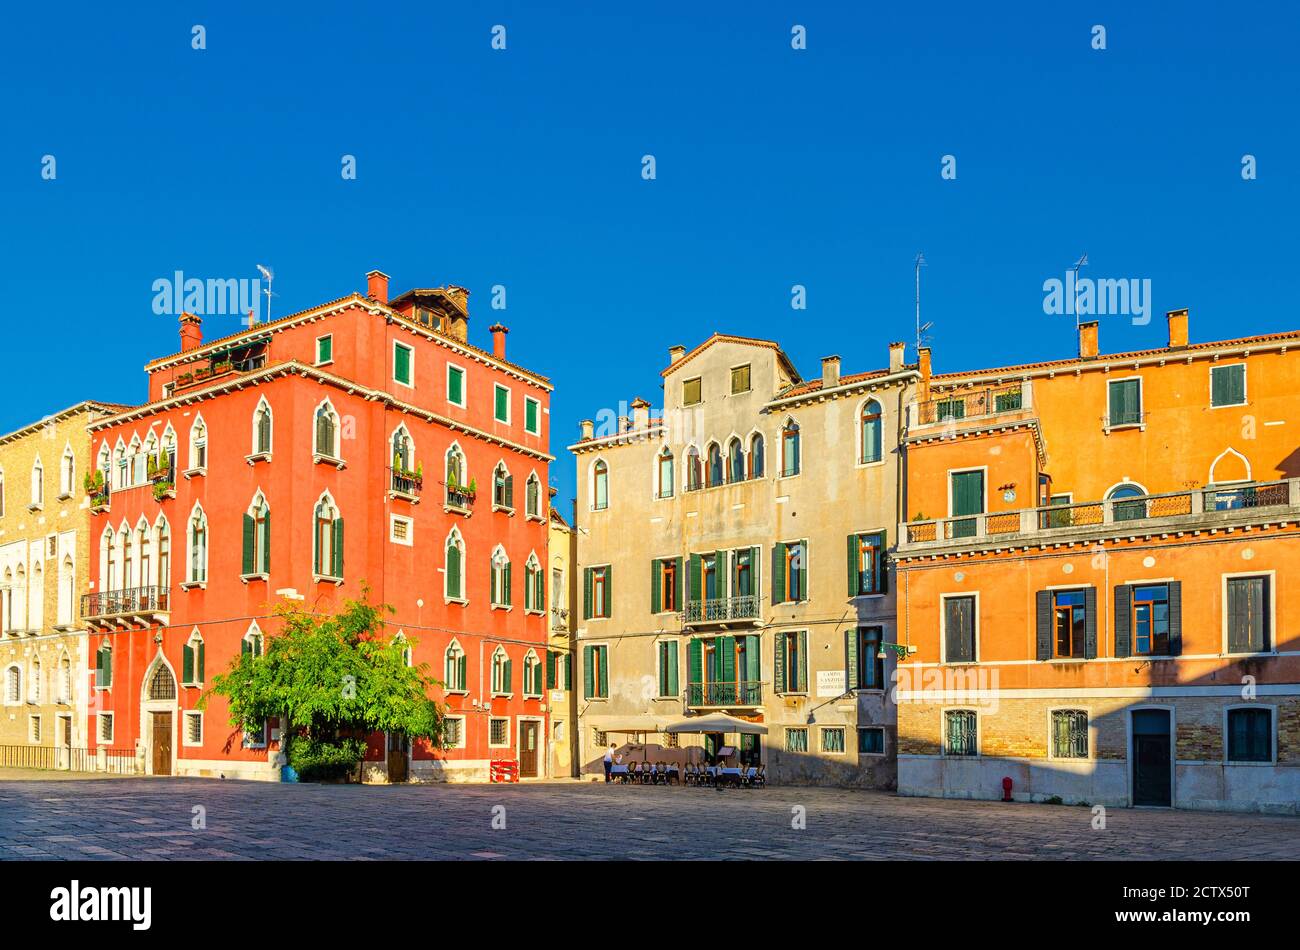 Place Campo San Anzolo Sant'Angelo avec des bâtiments typiquement italiens d'architecture vénitienne dans le centre historique de Venise San Marco Sestiere, région de Vénétie, Italie du Nord Banque D'Images